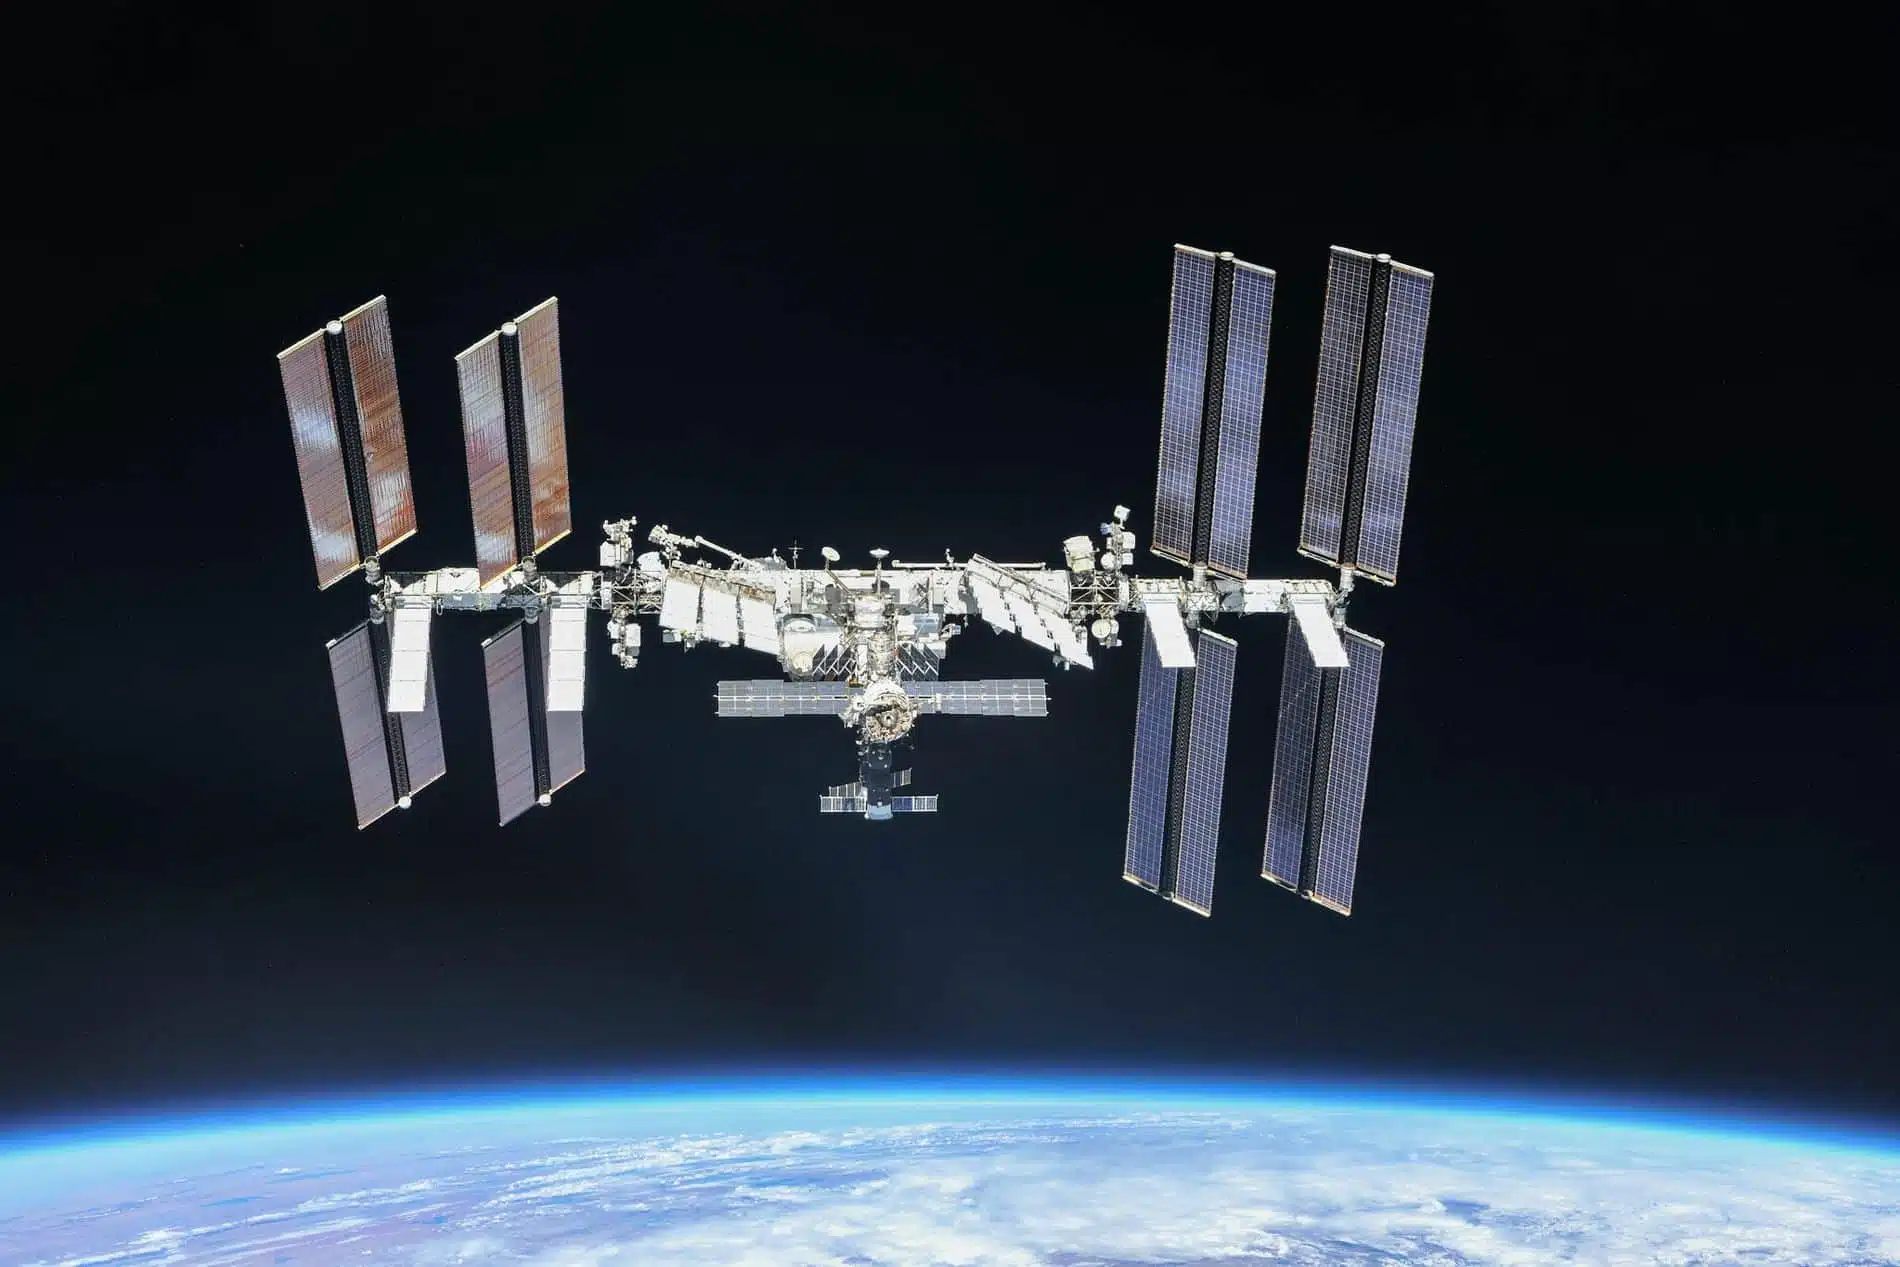 La Nasa choisit SpaceX pour développer le moyen de détruire l'ISS après 2030